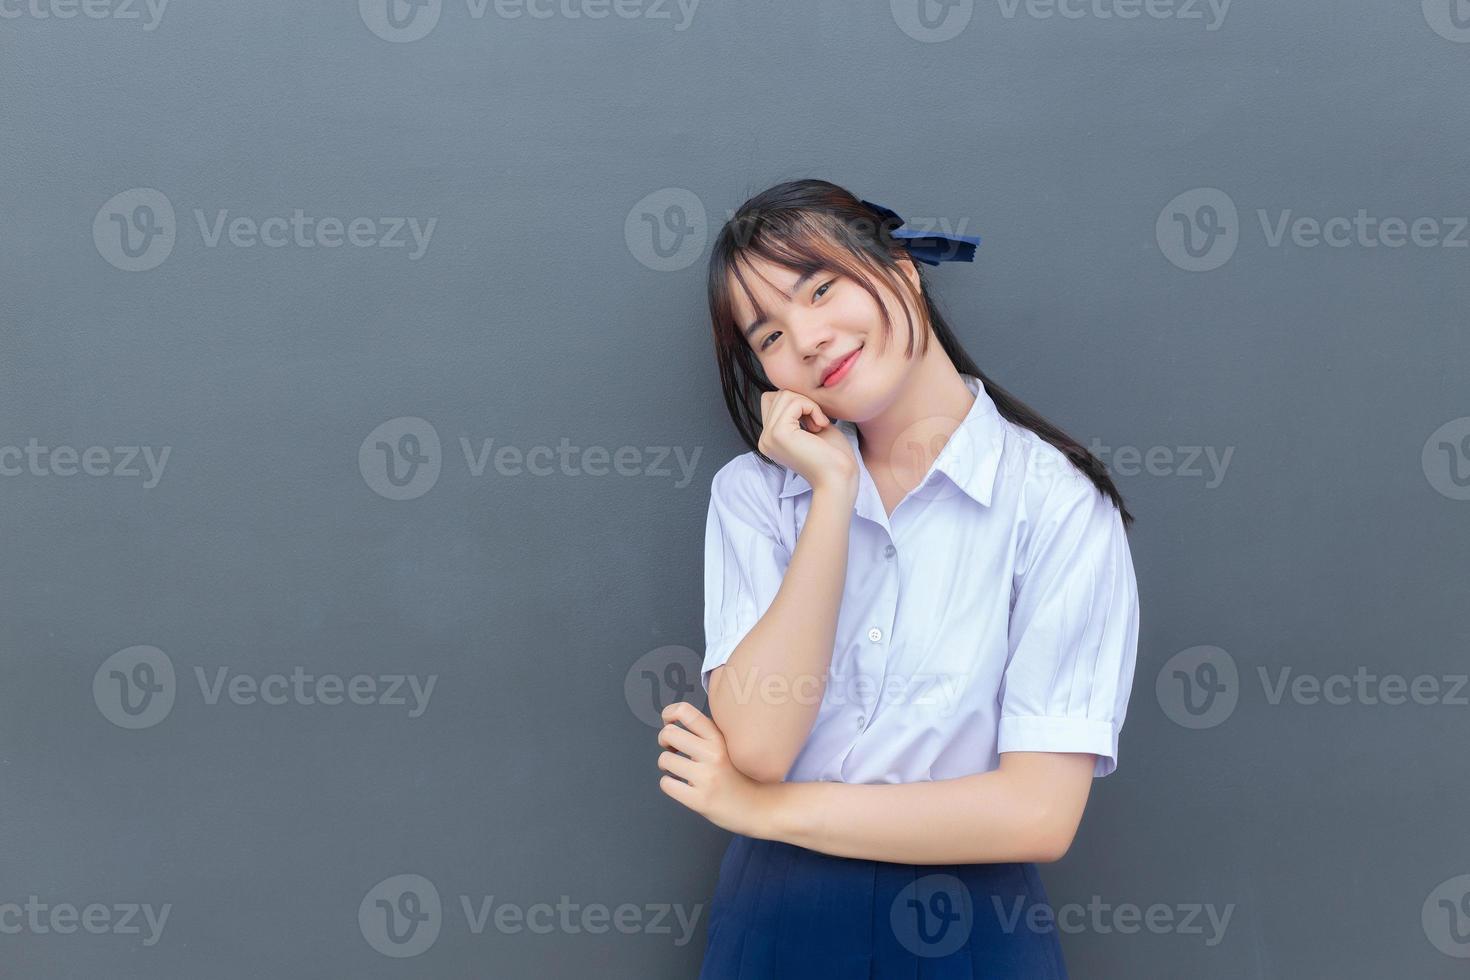 linda estudiante asiática de secundaria con uniforme escolar con sonrisas confiadas mientras mira a la cámara felizmente con gris en el fondo. foto